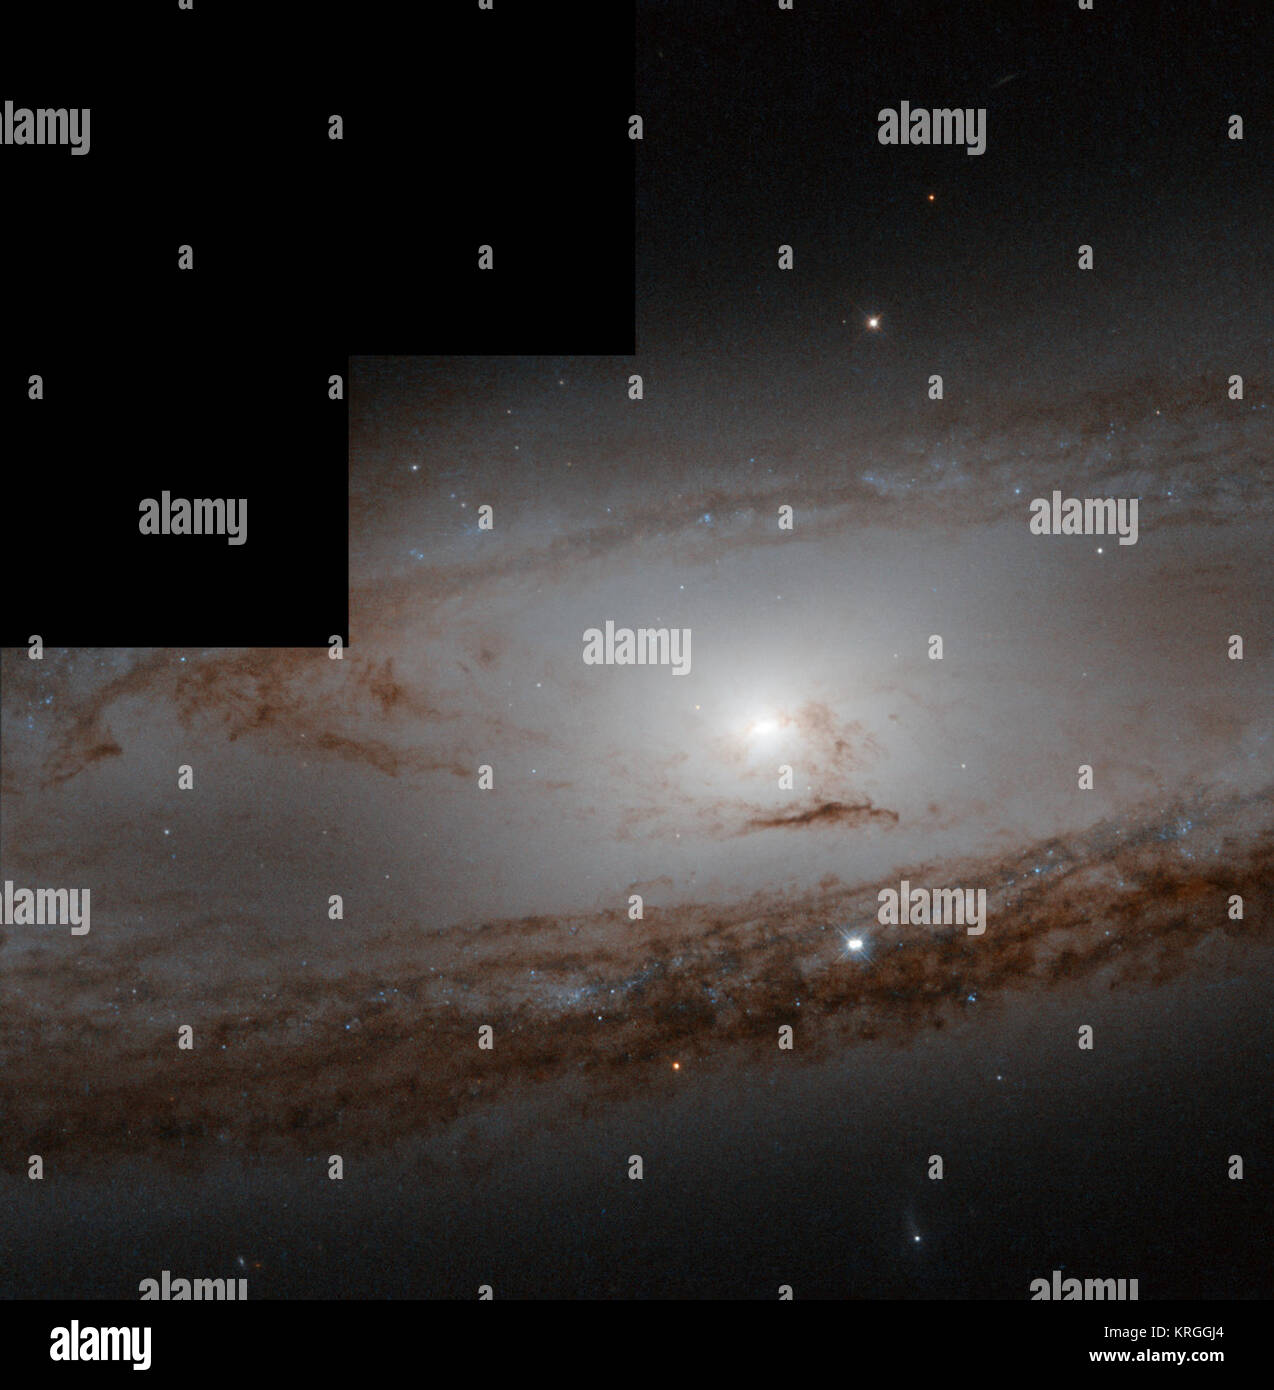 Il 1 marzo 1780 era particolarmente produttive notte per Charles Messier. La pettinatura della costellazione del Leone di aggiunte al suo grand catalogo astronomico, ha colpito su non uno, ma due nuovi oggetti. Uno di questi oggetti è visto qui: Messier 65. 'Nebula scoperto in Leone: è molto debole e non contiene alcuna stella," egli jotted giù nel suo notebook. Ma egli è stato sbagliato - come oggi sappiamo, Messier 65 è una galassia spirale contenenti miliardi su miliardi di stelle. Tutti Messier vide una debole luce diffusa, nulla di come i dettagli qui, in modo siamo in grado di perdonare il suo errore. Se egli avesse avuto accesso ad un tel Foto Stock